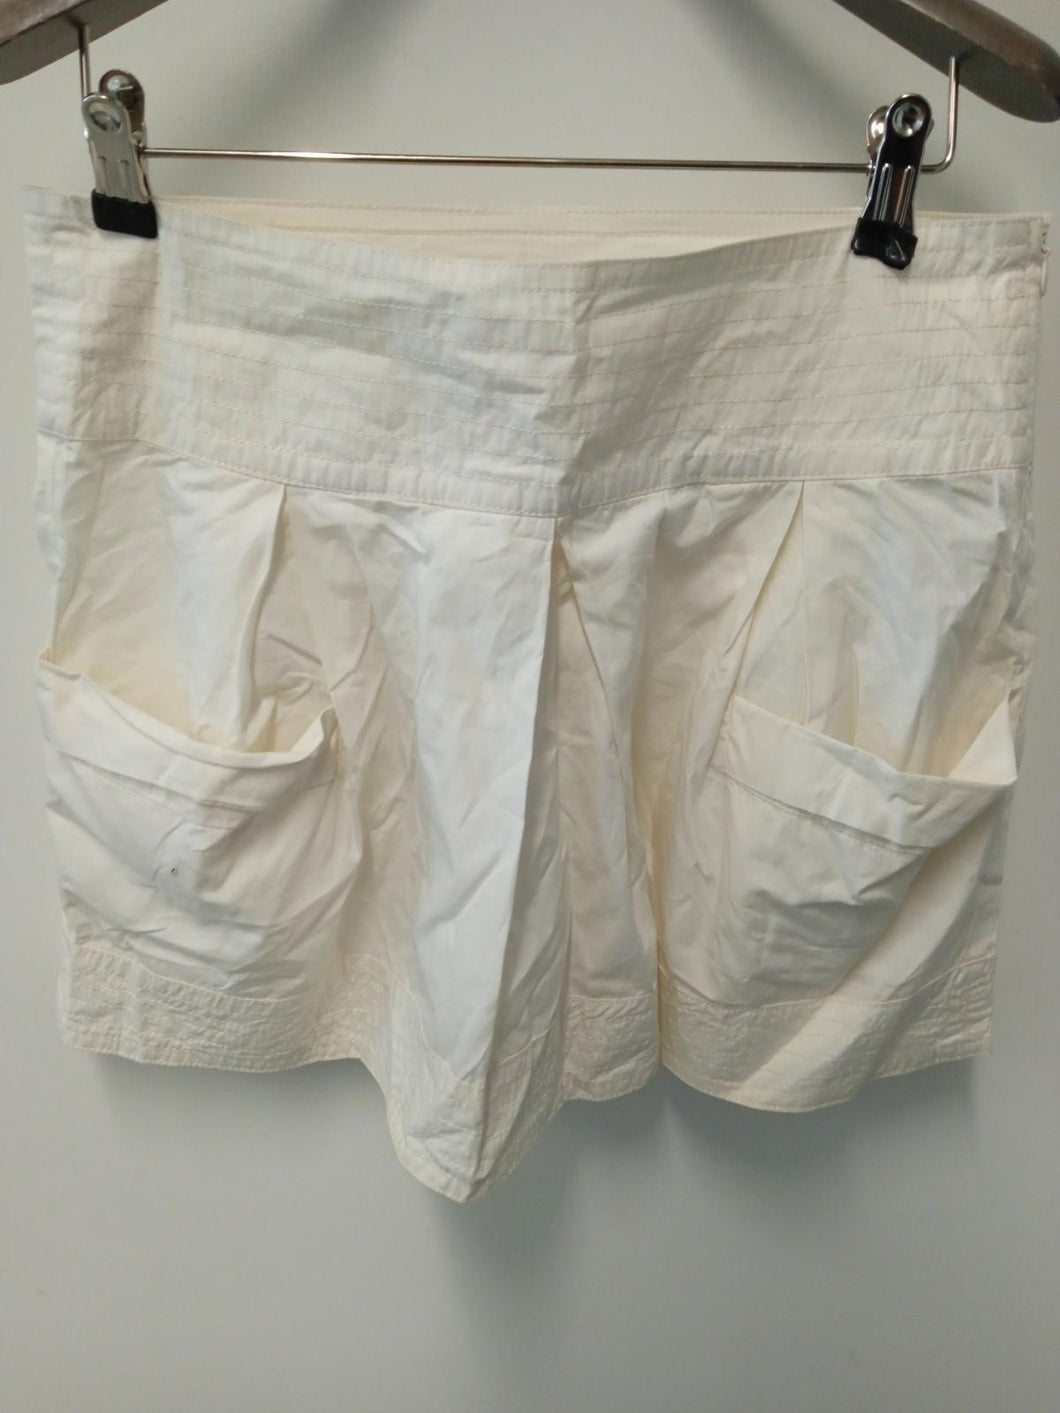 SEEBYCHLOE Ladies White Cotton 2-Pocket Mini Skirt Size UK8